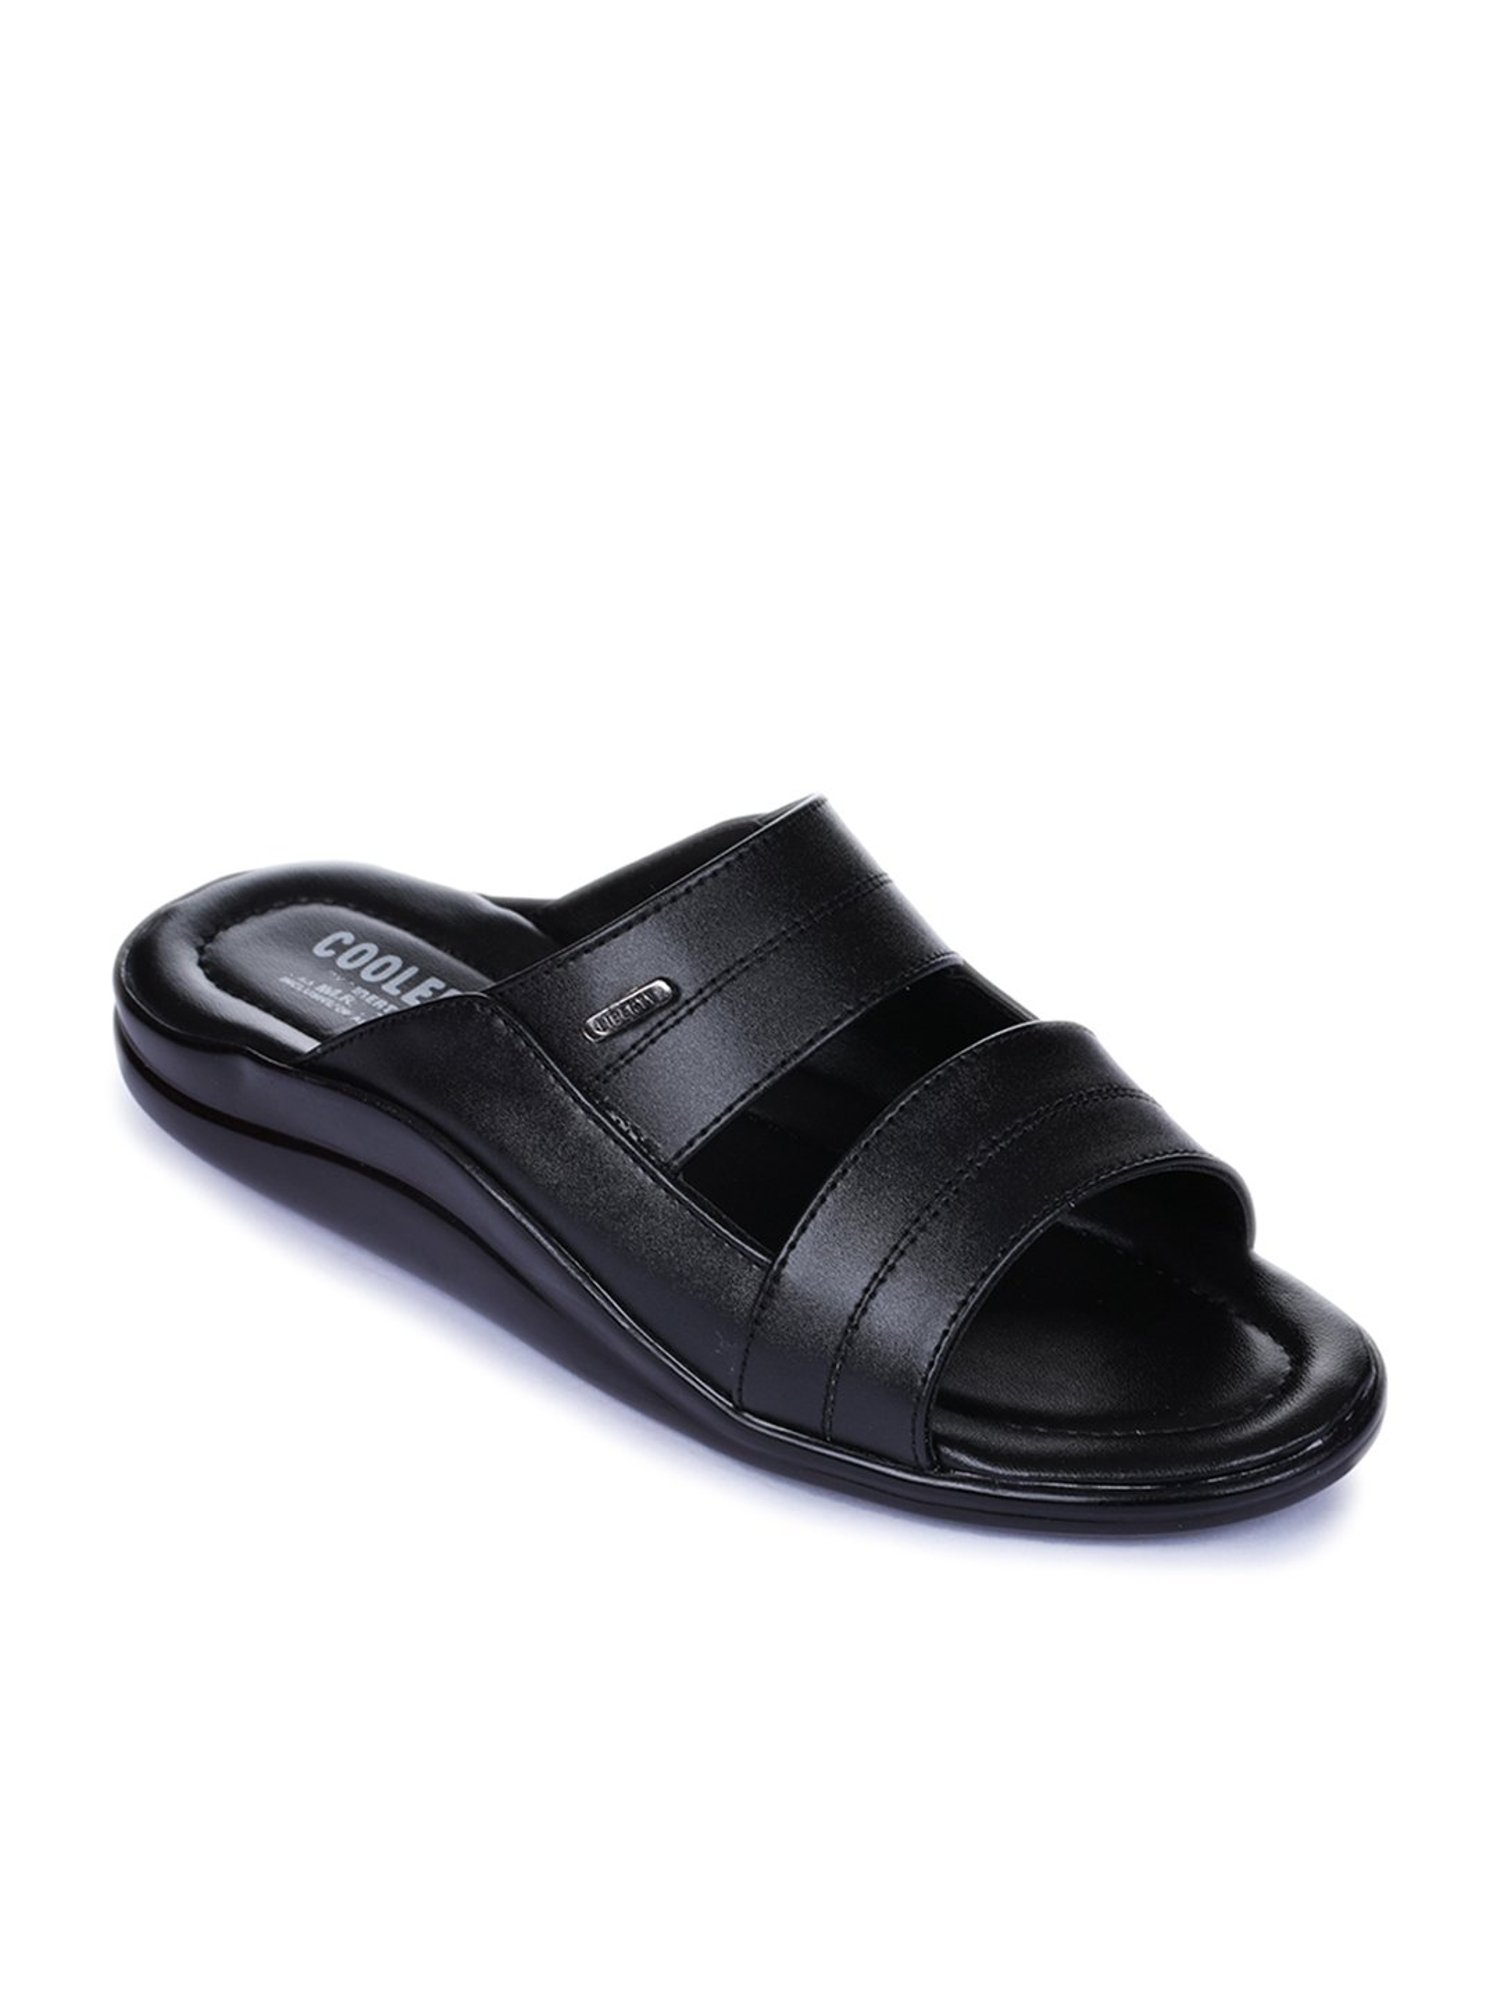 Legero LIBERTY - Walking sandals - schwarz/black - Zalando.de